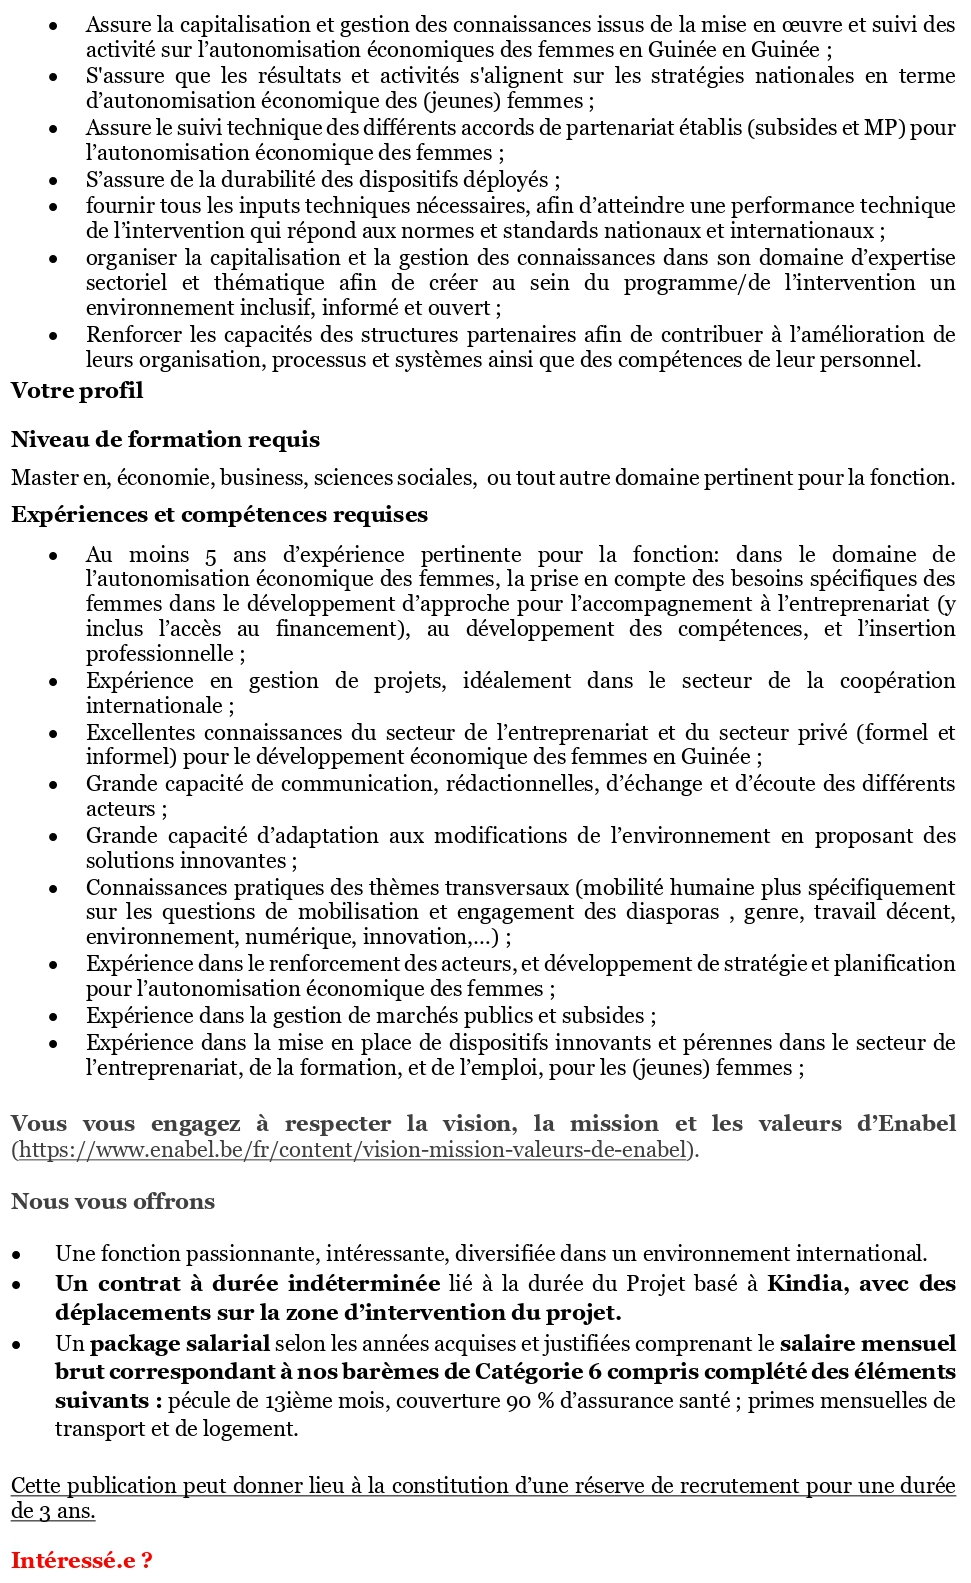 Avis de recrutement d'un.e Expert.e. à Autonomisation économique des femmes (EAEF) (h/f/x) – Guinée | page 2